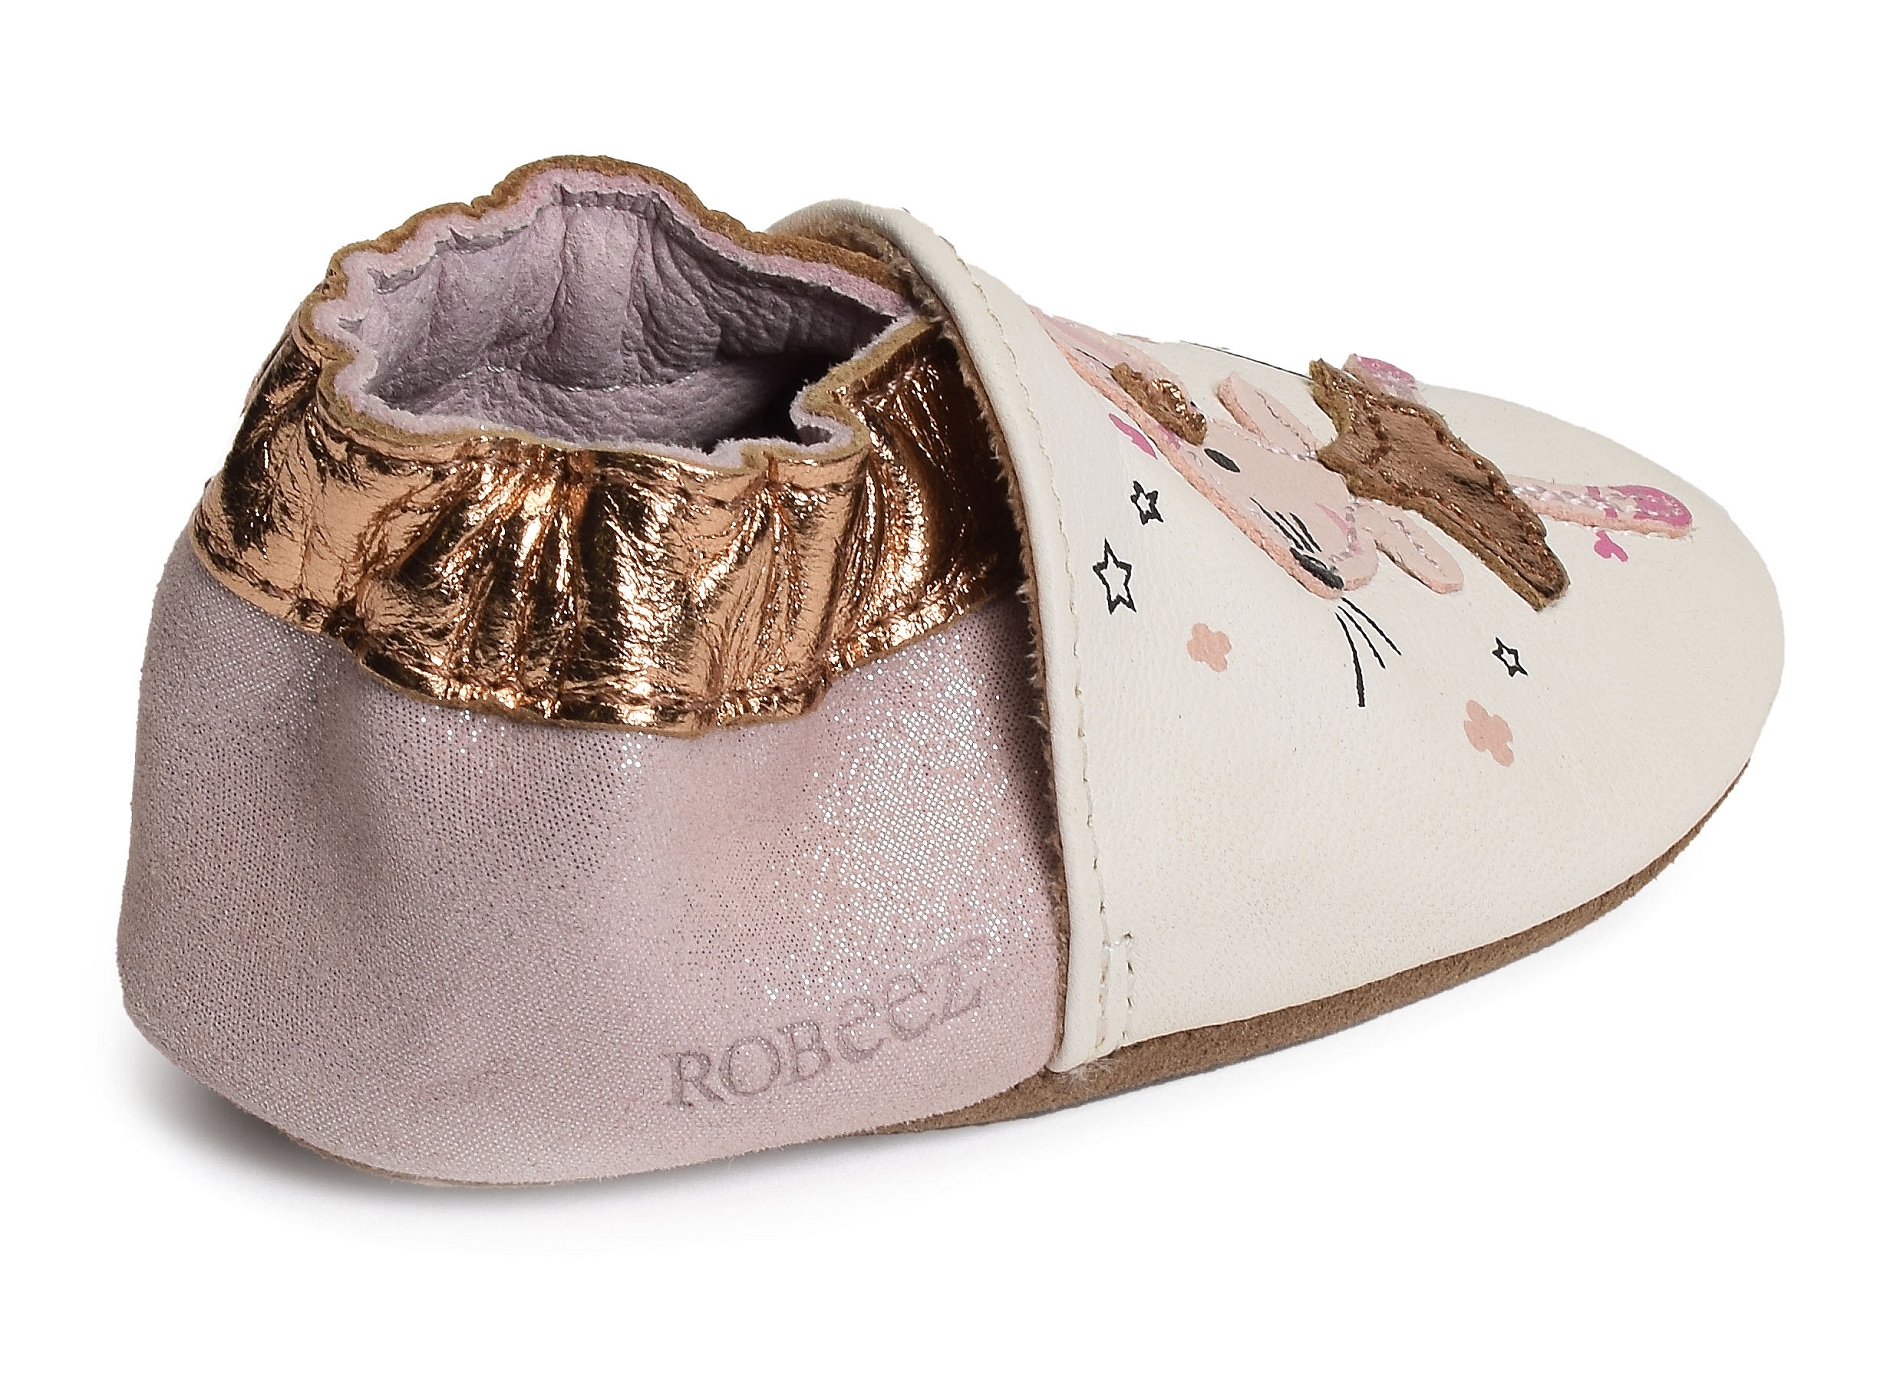 Chaussons bébé fille Robeez Dancing Mouse - Robeez - Chaussures